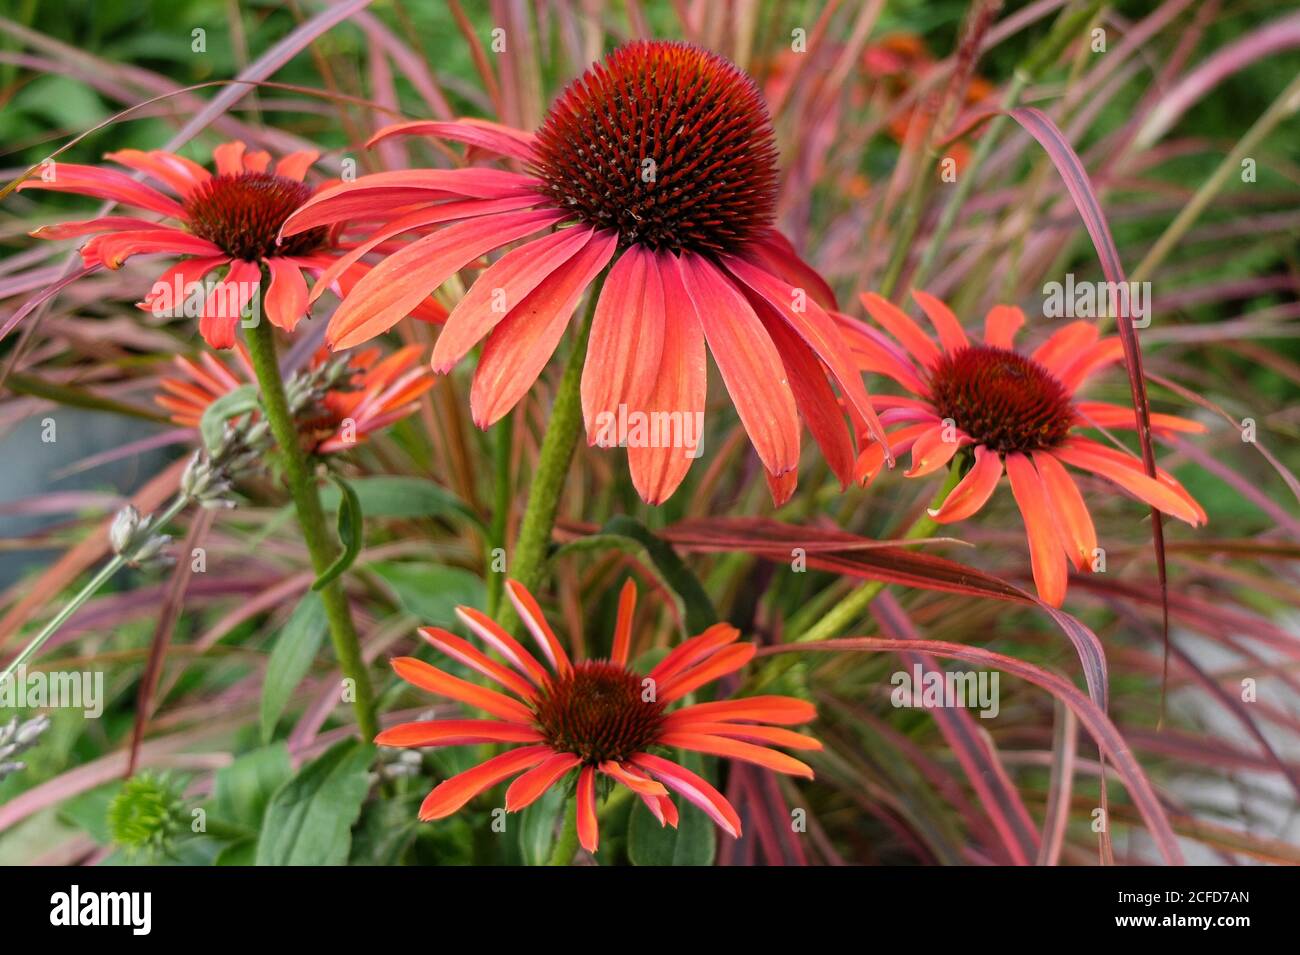 Sun hat 'Julia' (Echinacea purpurea) Stock Photo